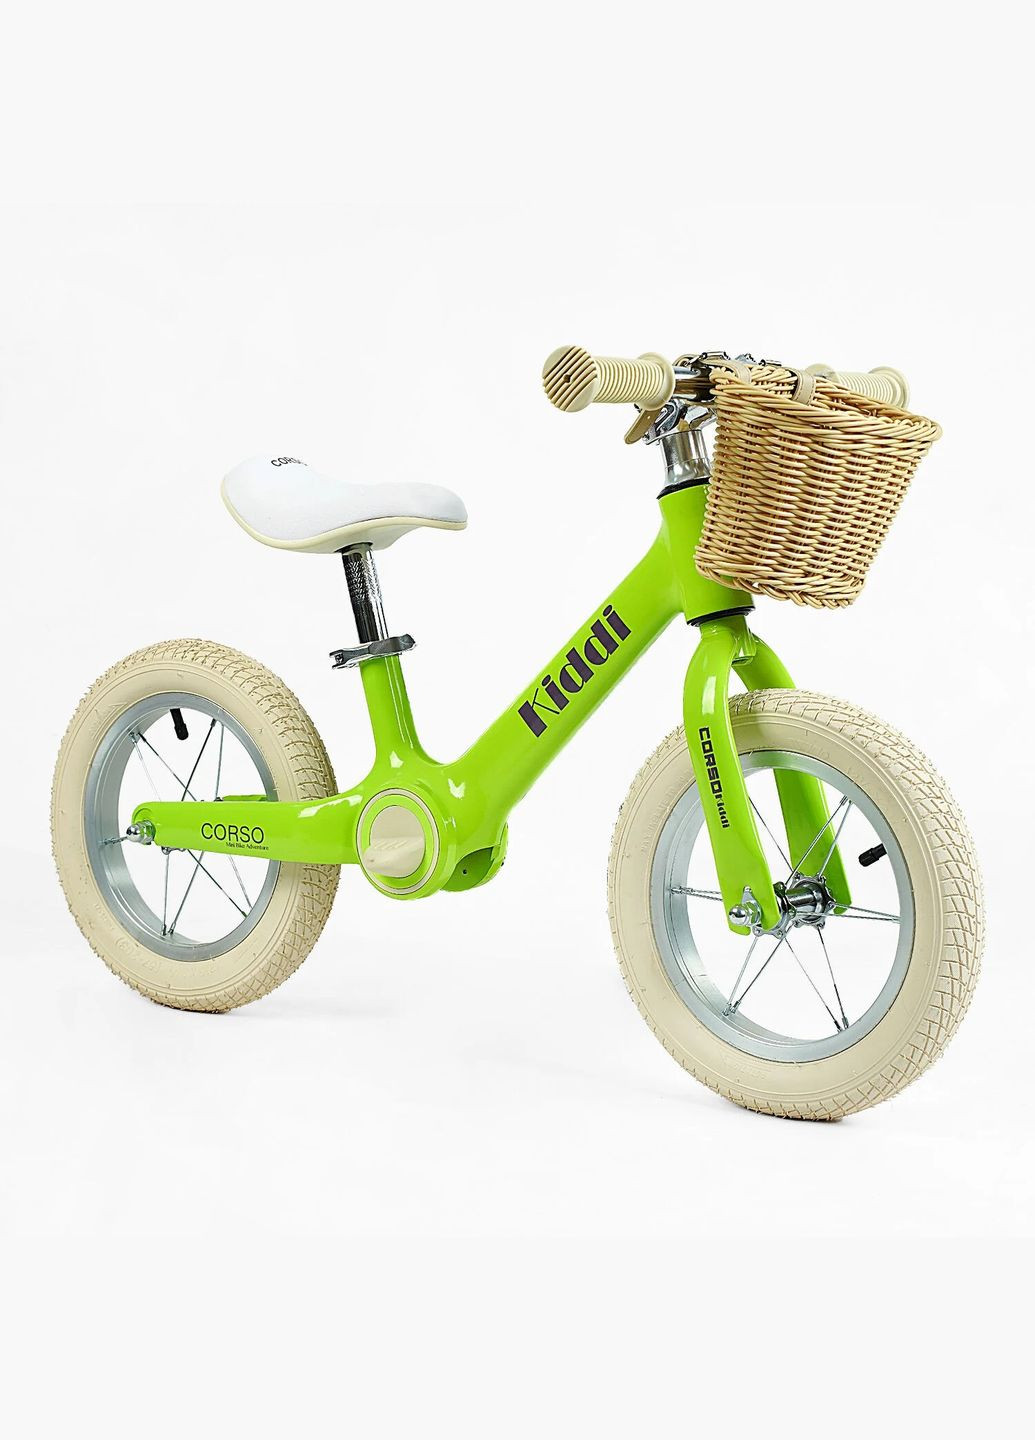 Дитячий велобіг KIDDI ML-12328. Магнієва рама, надувні колеса 12", підставка для ніг, кошик Corso (290254824)